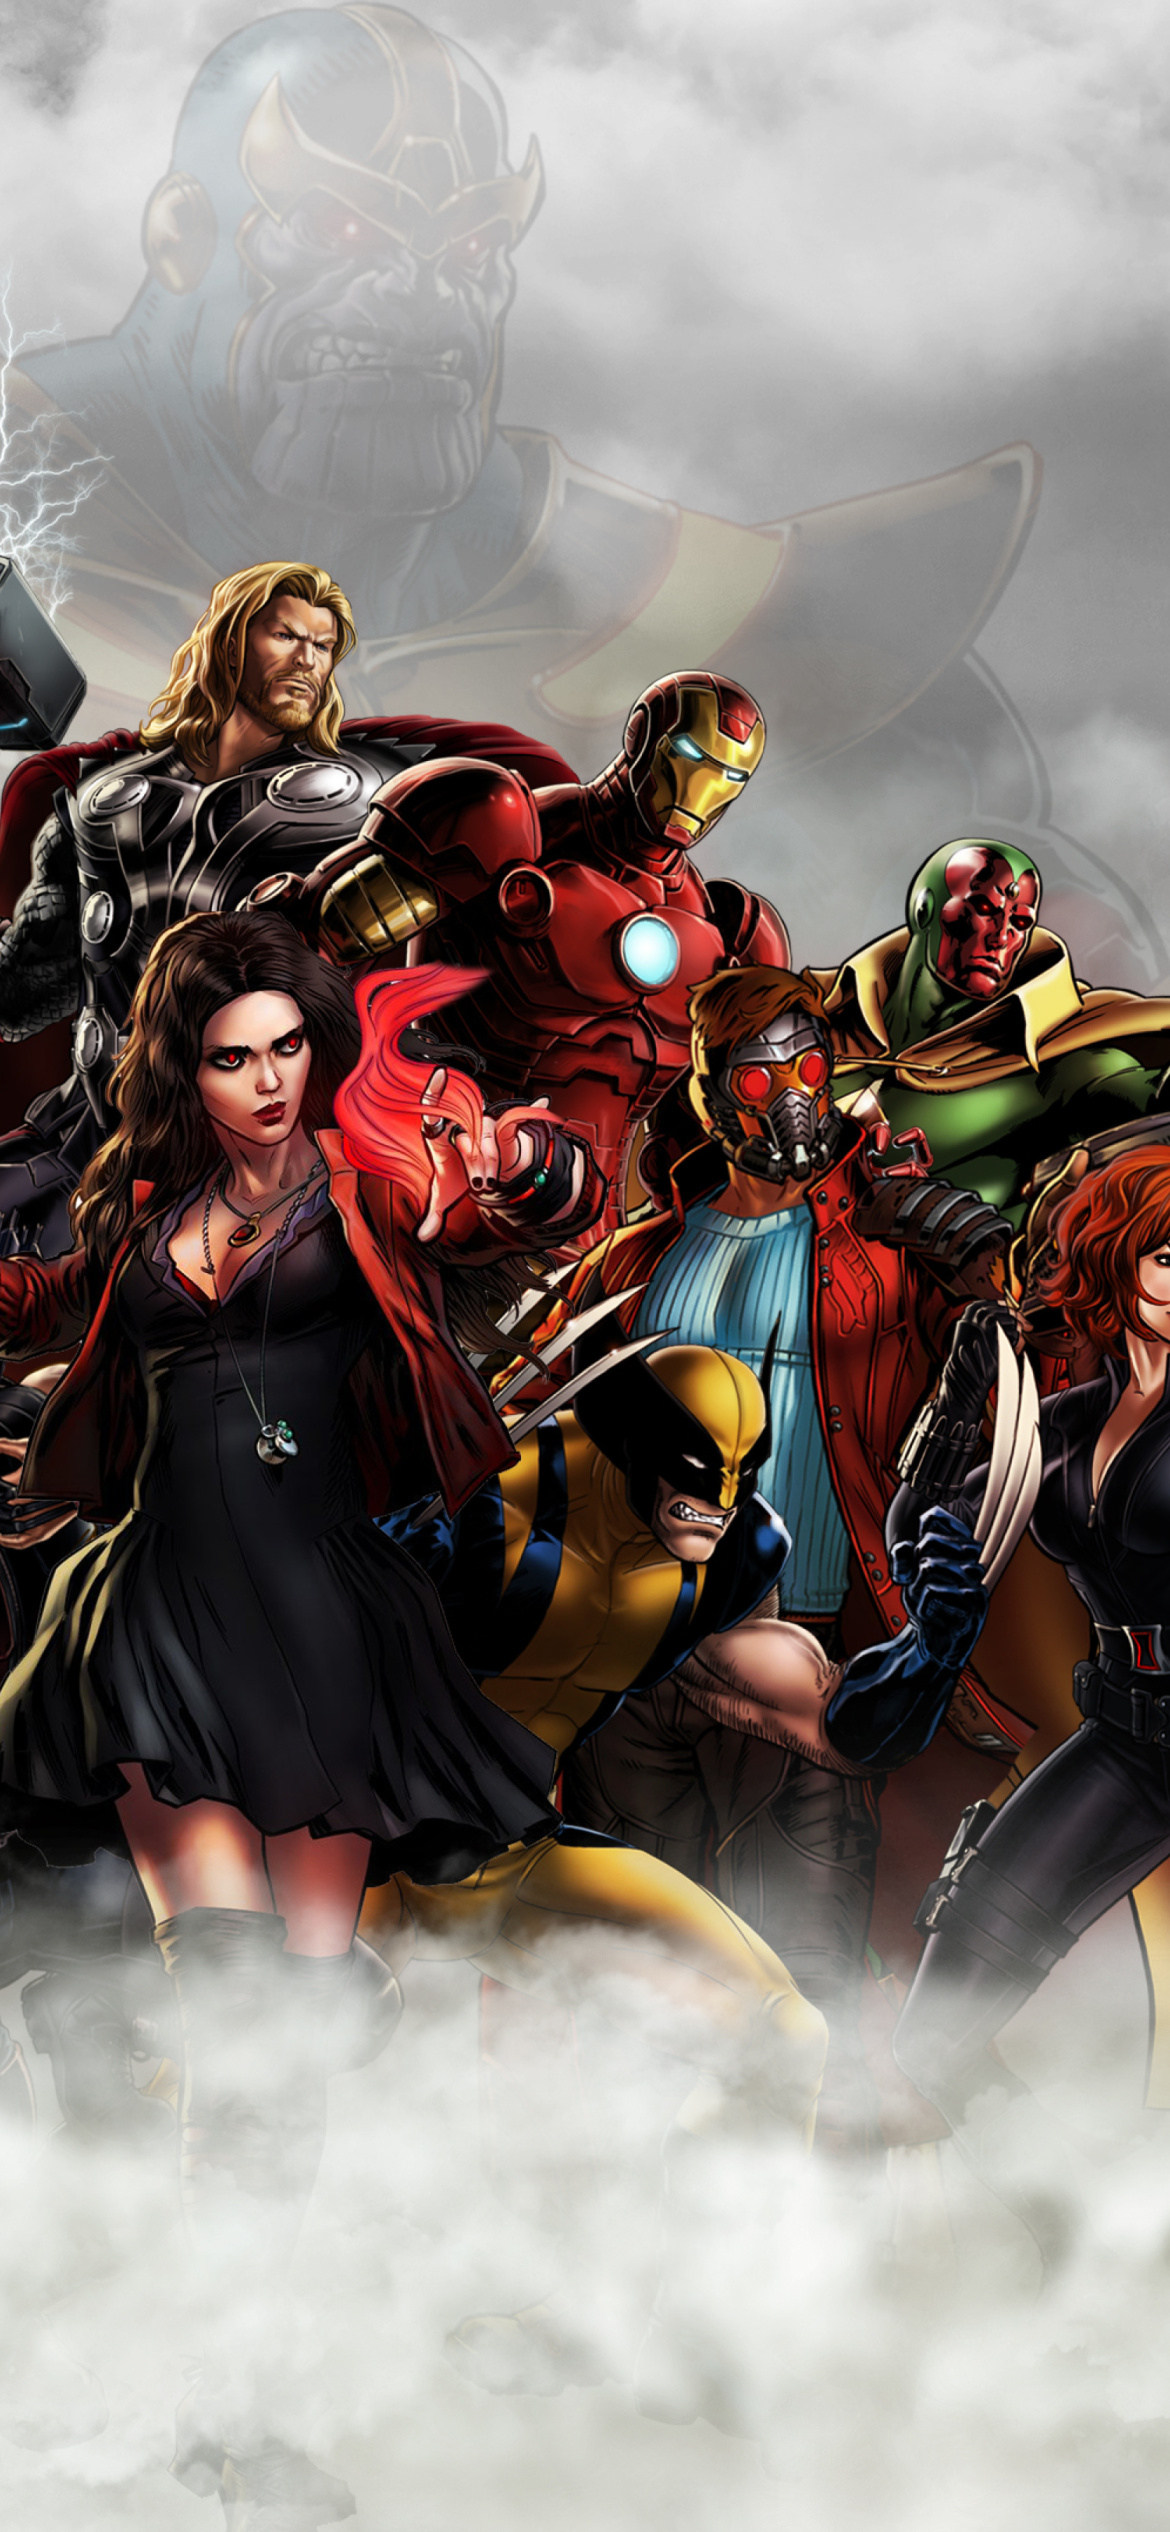 Das Avengers Infinity War 2018 Wallpaper 1170x2532